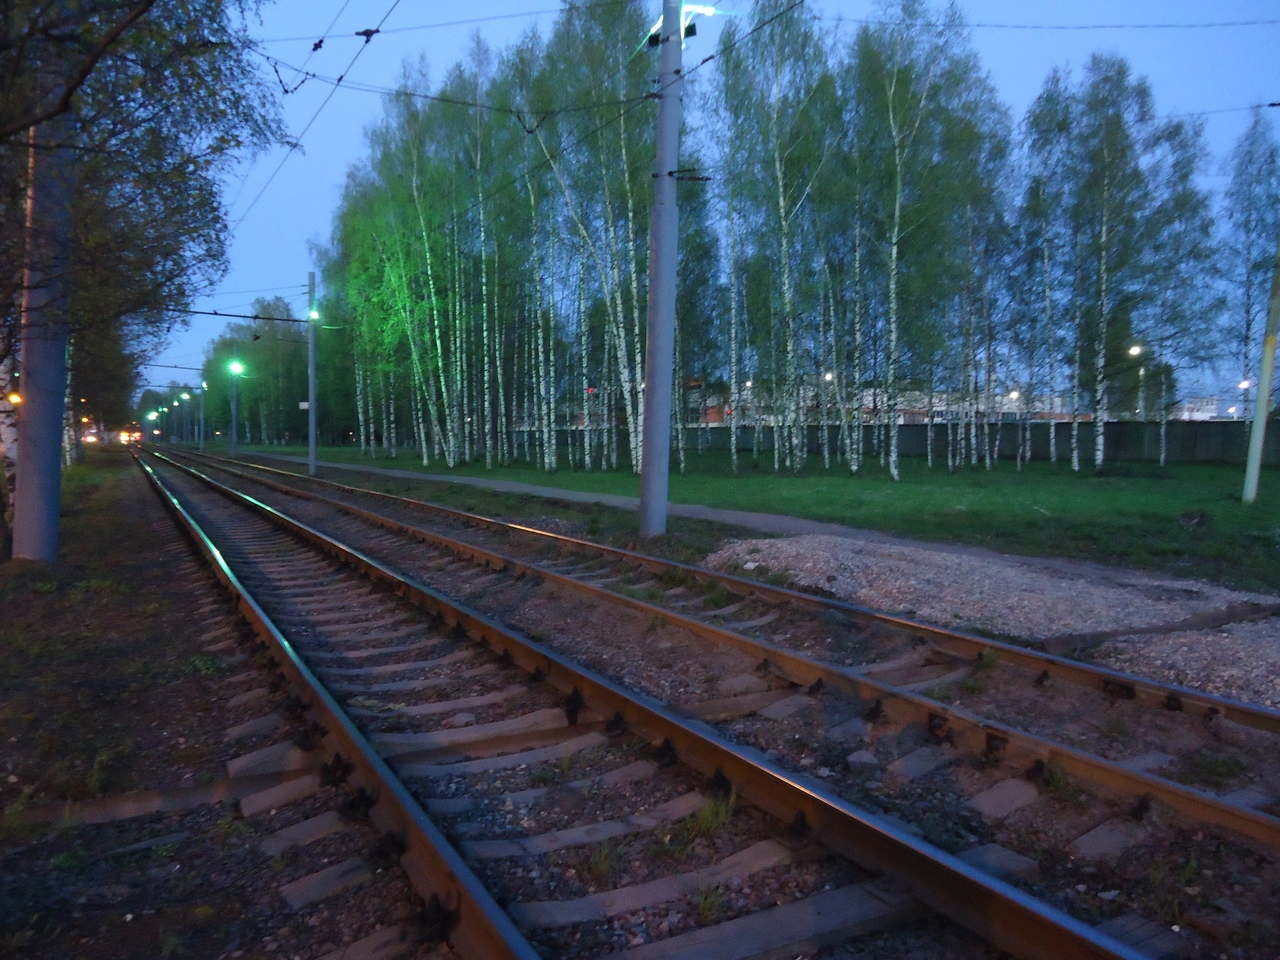 Ярославских пассажиров трамваев встретит необычная подсветка